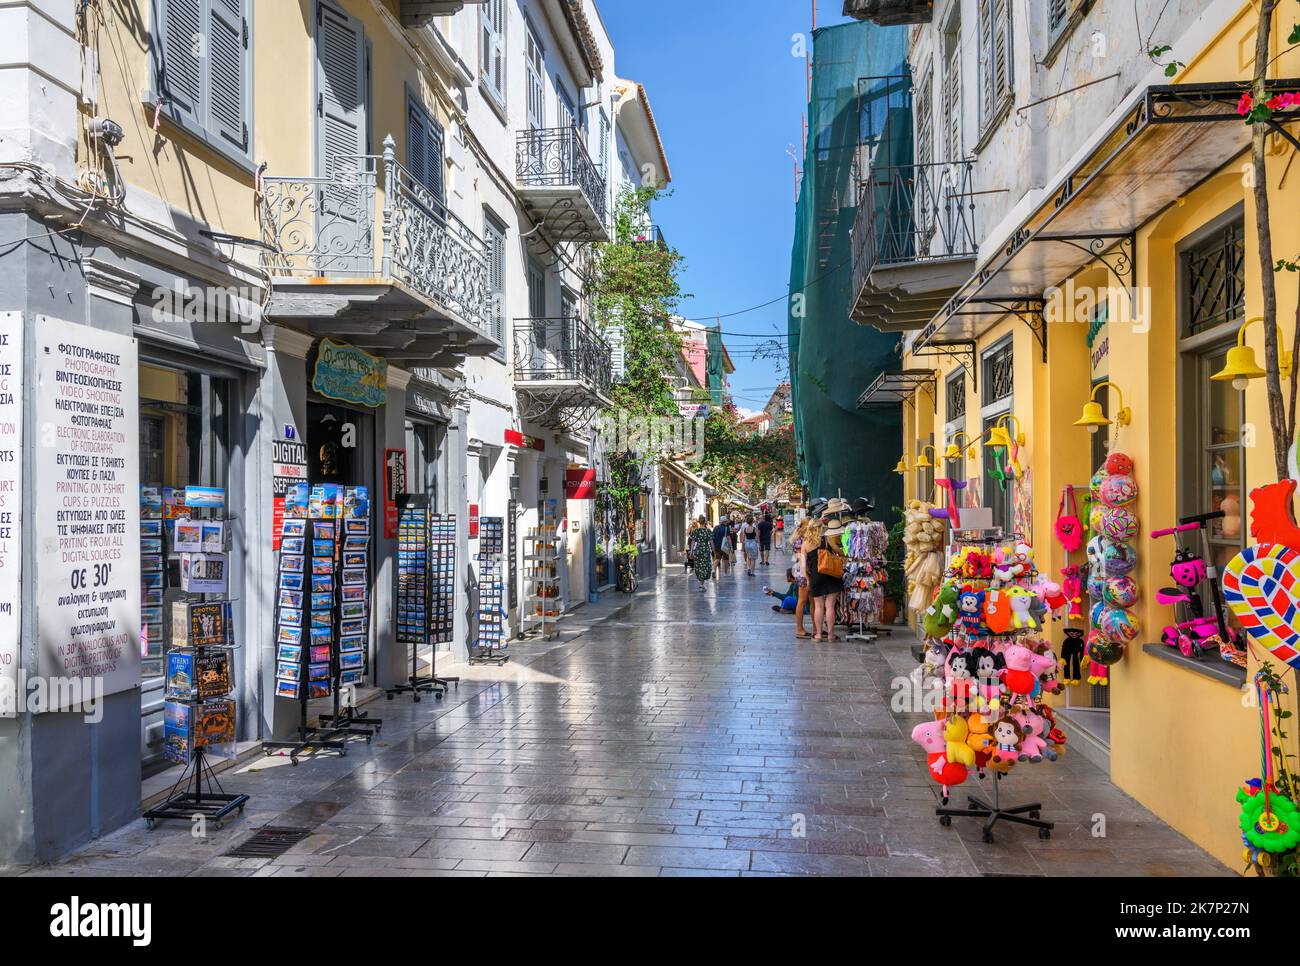 Negozi in una strada del centro storico, Nafplio (Nafplion), Peloponneso, Grecia Foto Stock